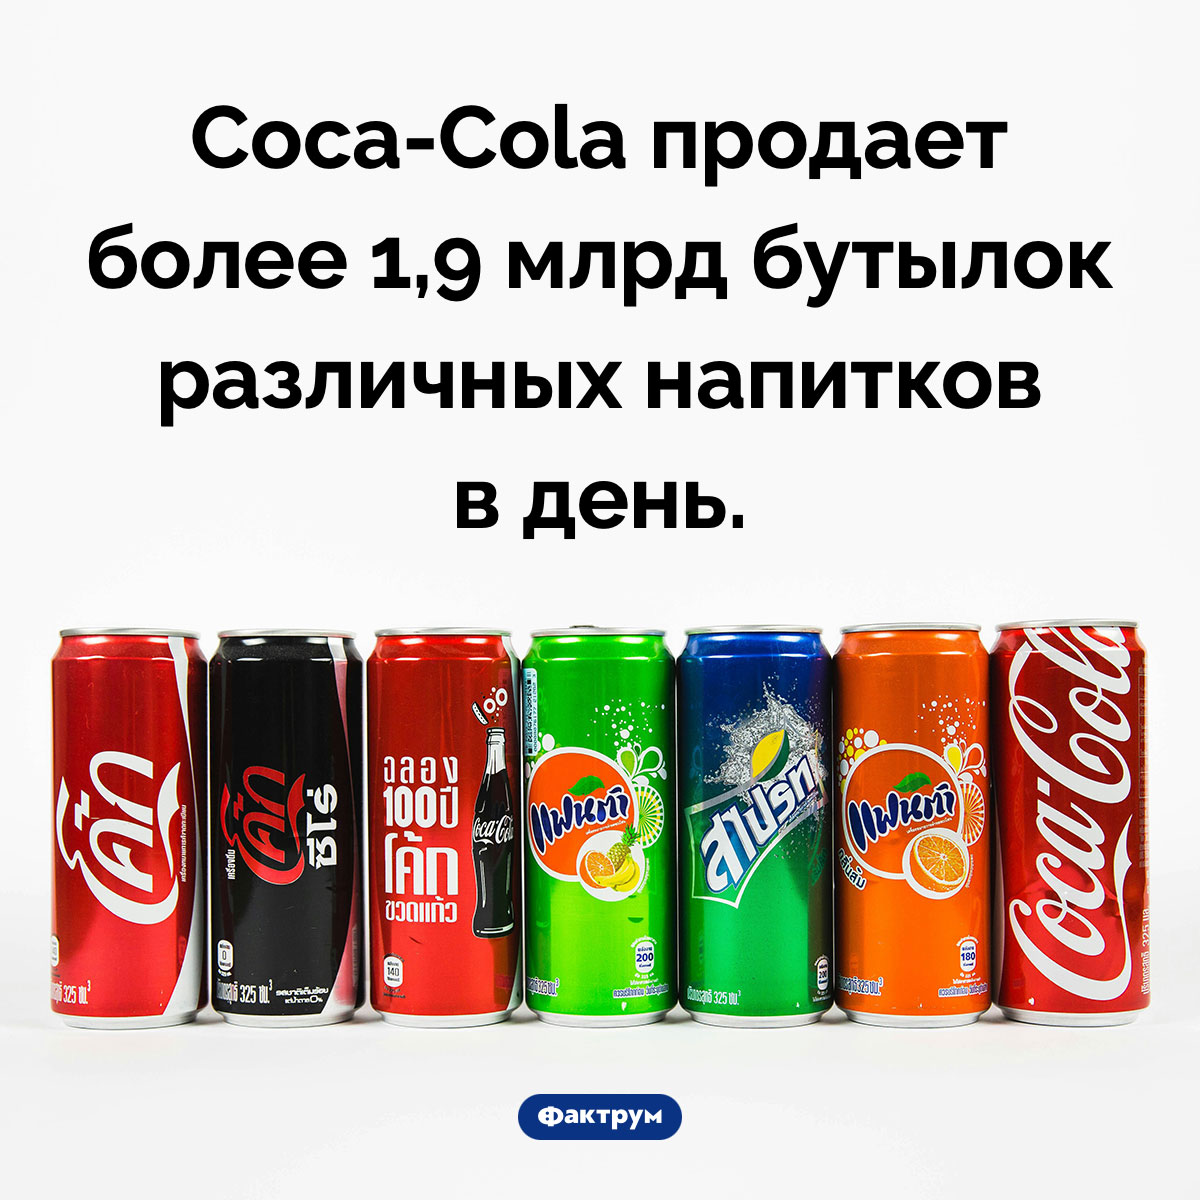 Сколько напитков продаёт Coca-Cola. Coca-Cola продает более 1,9 млрд бутылок различных напитков в день.